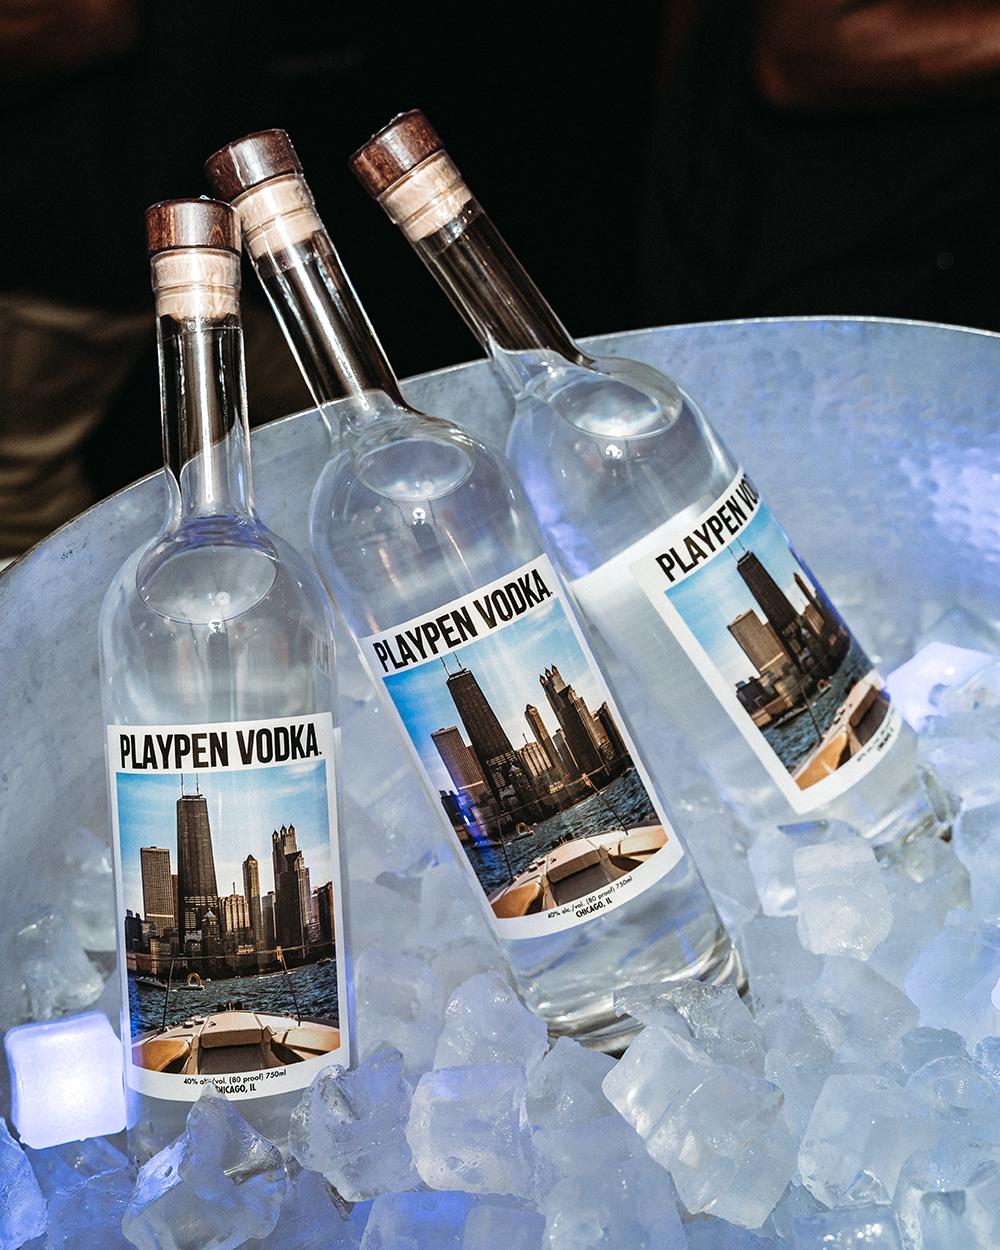 Three bottles of PlayPen Vodka in an ice bucket